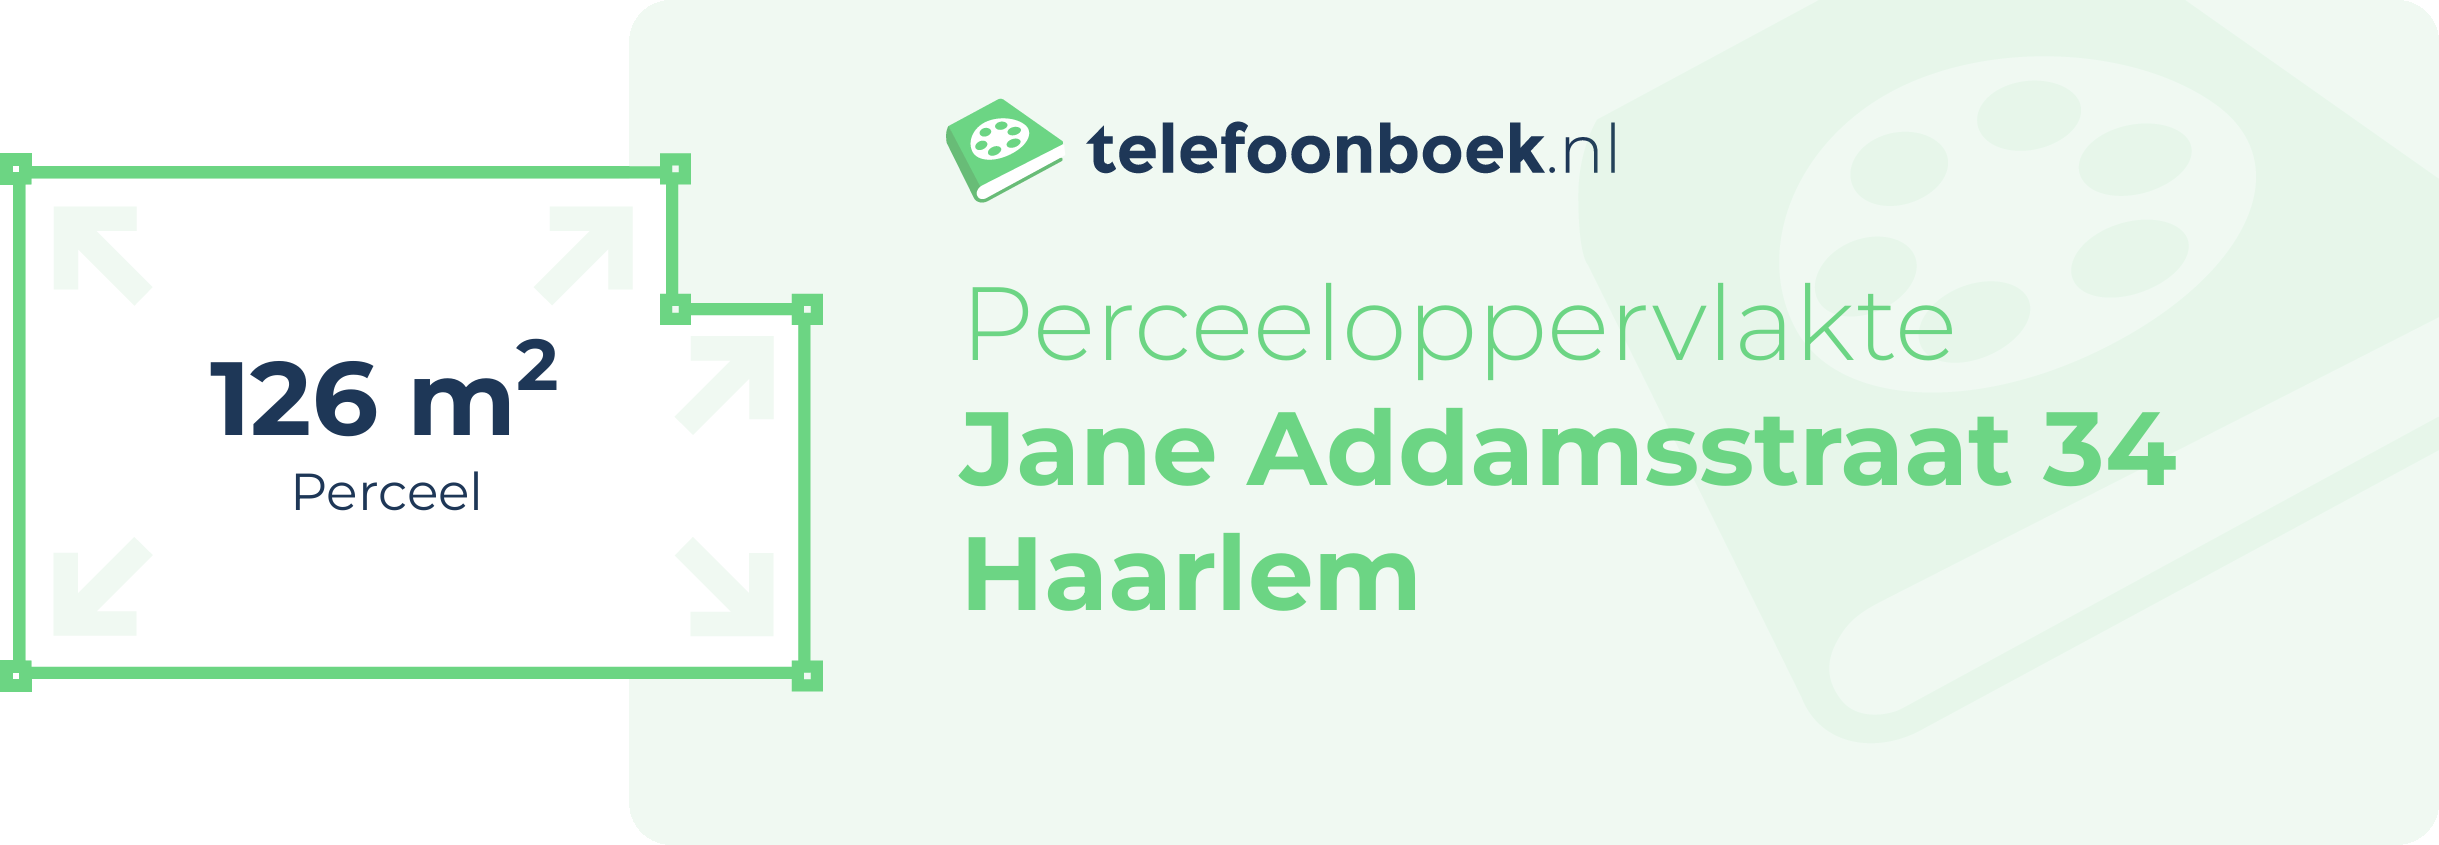 Perceeloppervlakte Jane Addamsstraat 34 Haarlem